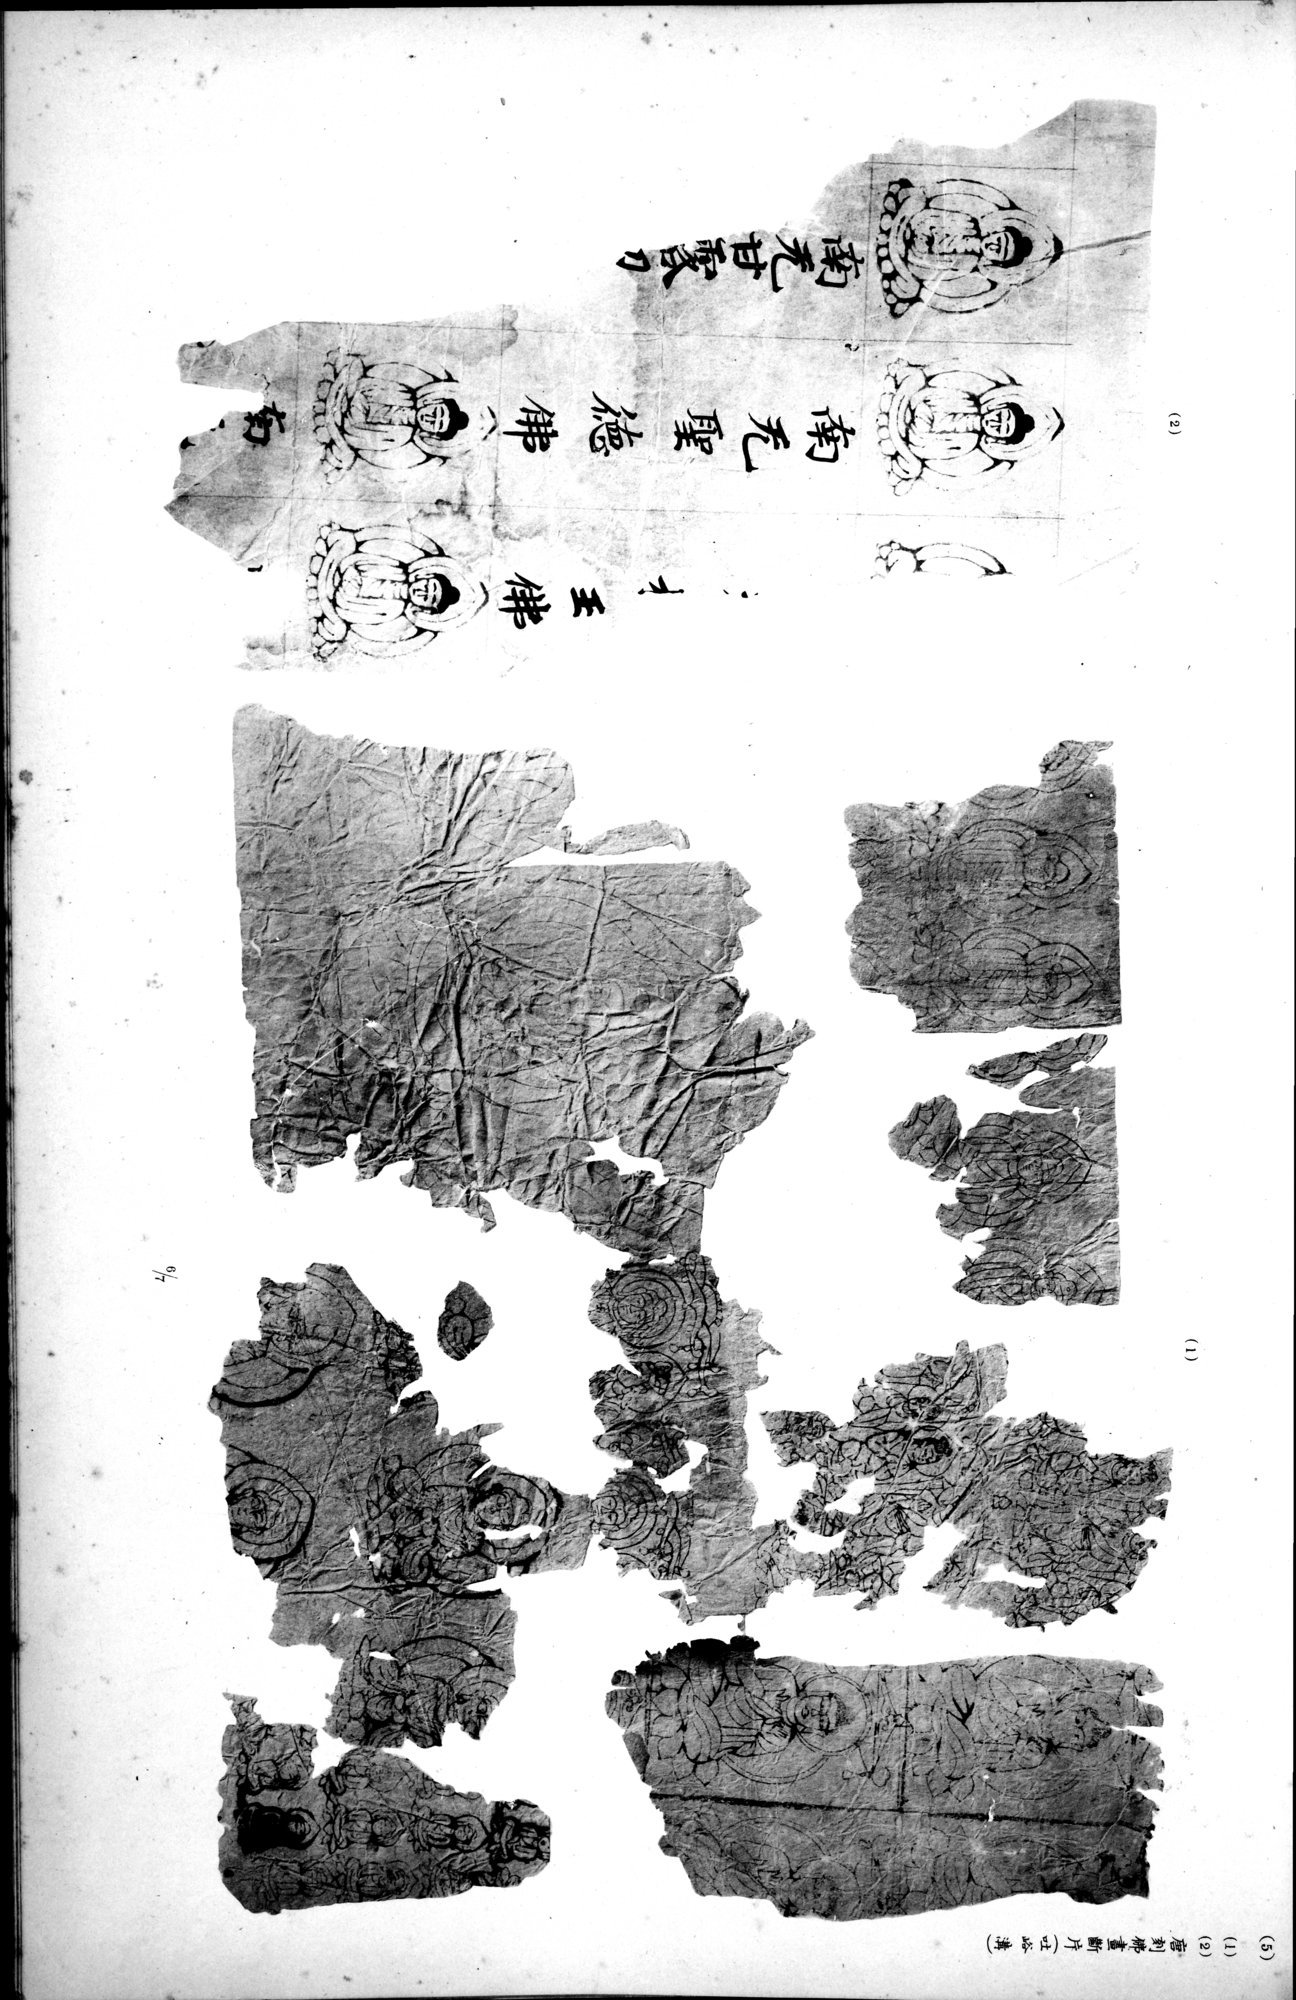 西域考古図譜 : vol.2 / Page 313 (Grayscale High Resolution Image)